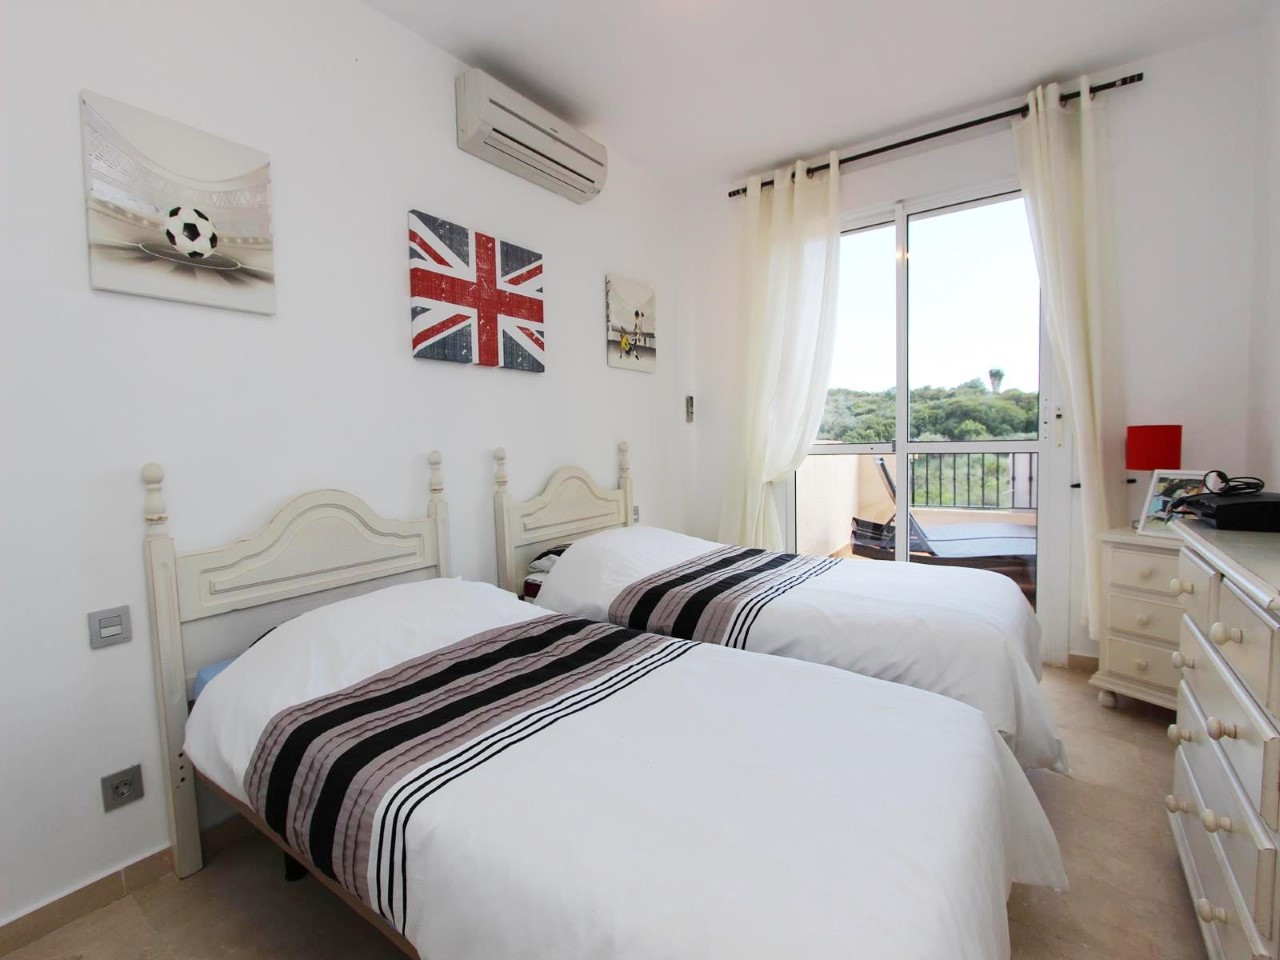 3 bedroom luxury apartment in Manilva - mibgroup.es